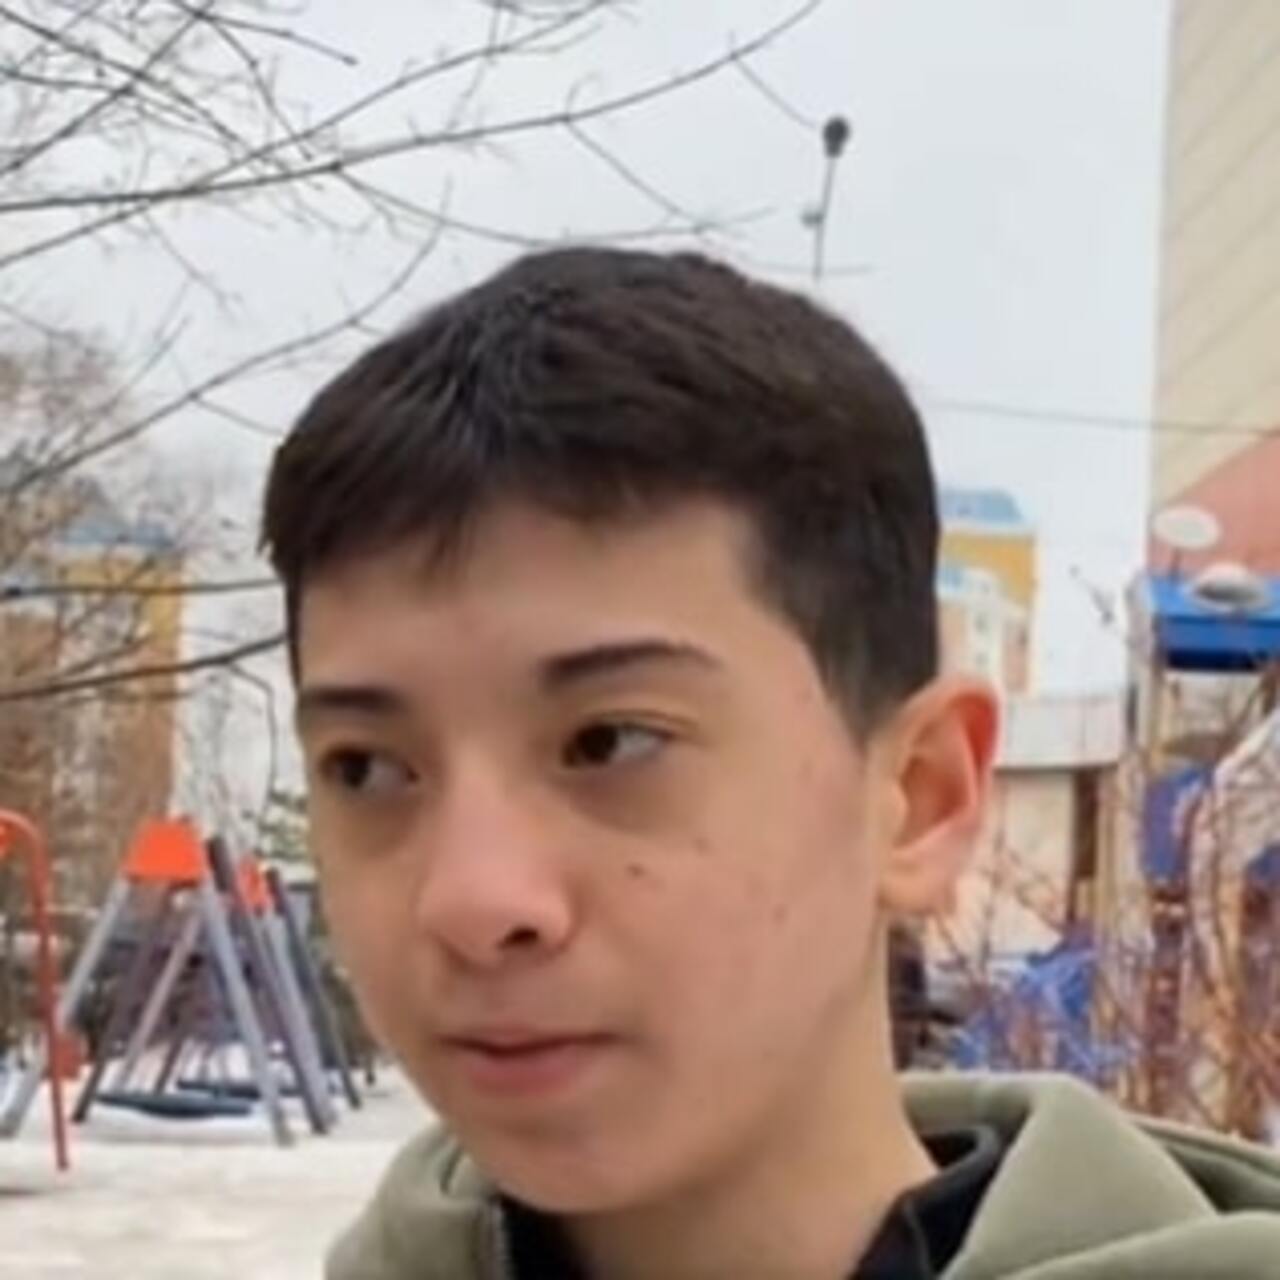 Moskova saldırısında onlarca kişiyi kurtaran 15 yaşındaki çocuk kahraman oldu